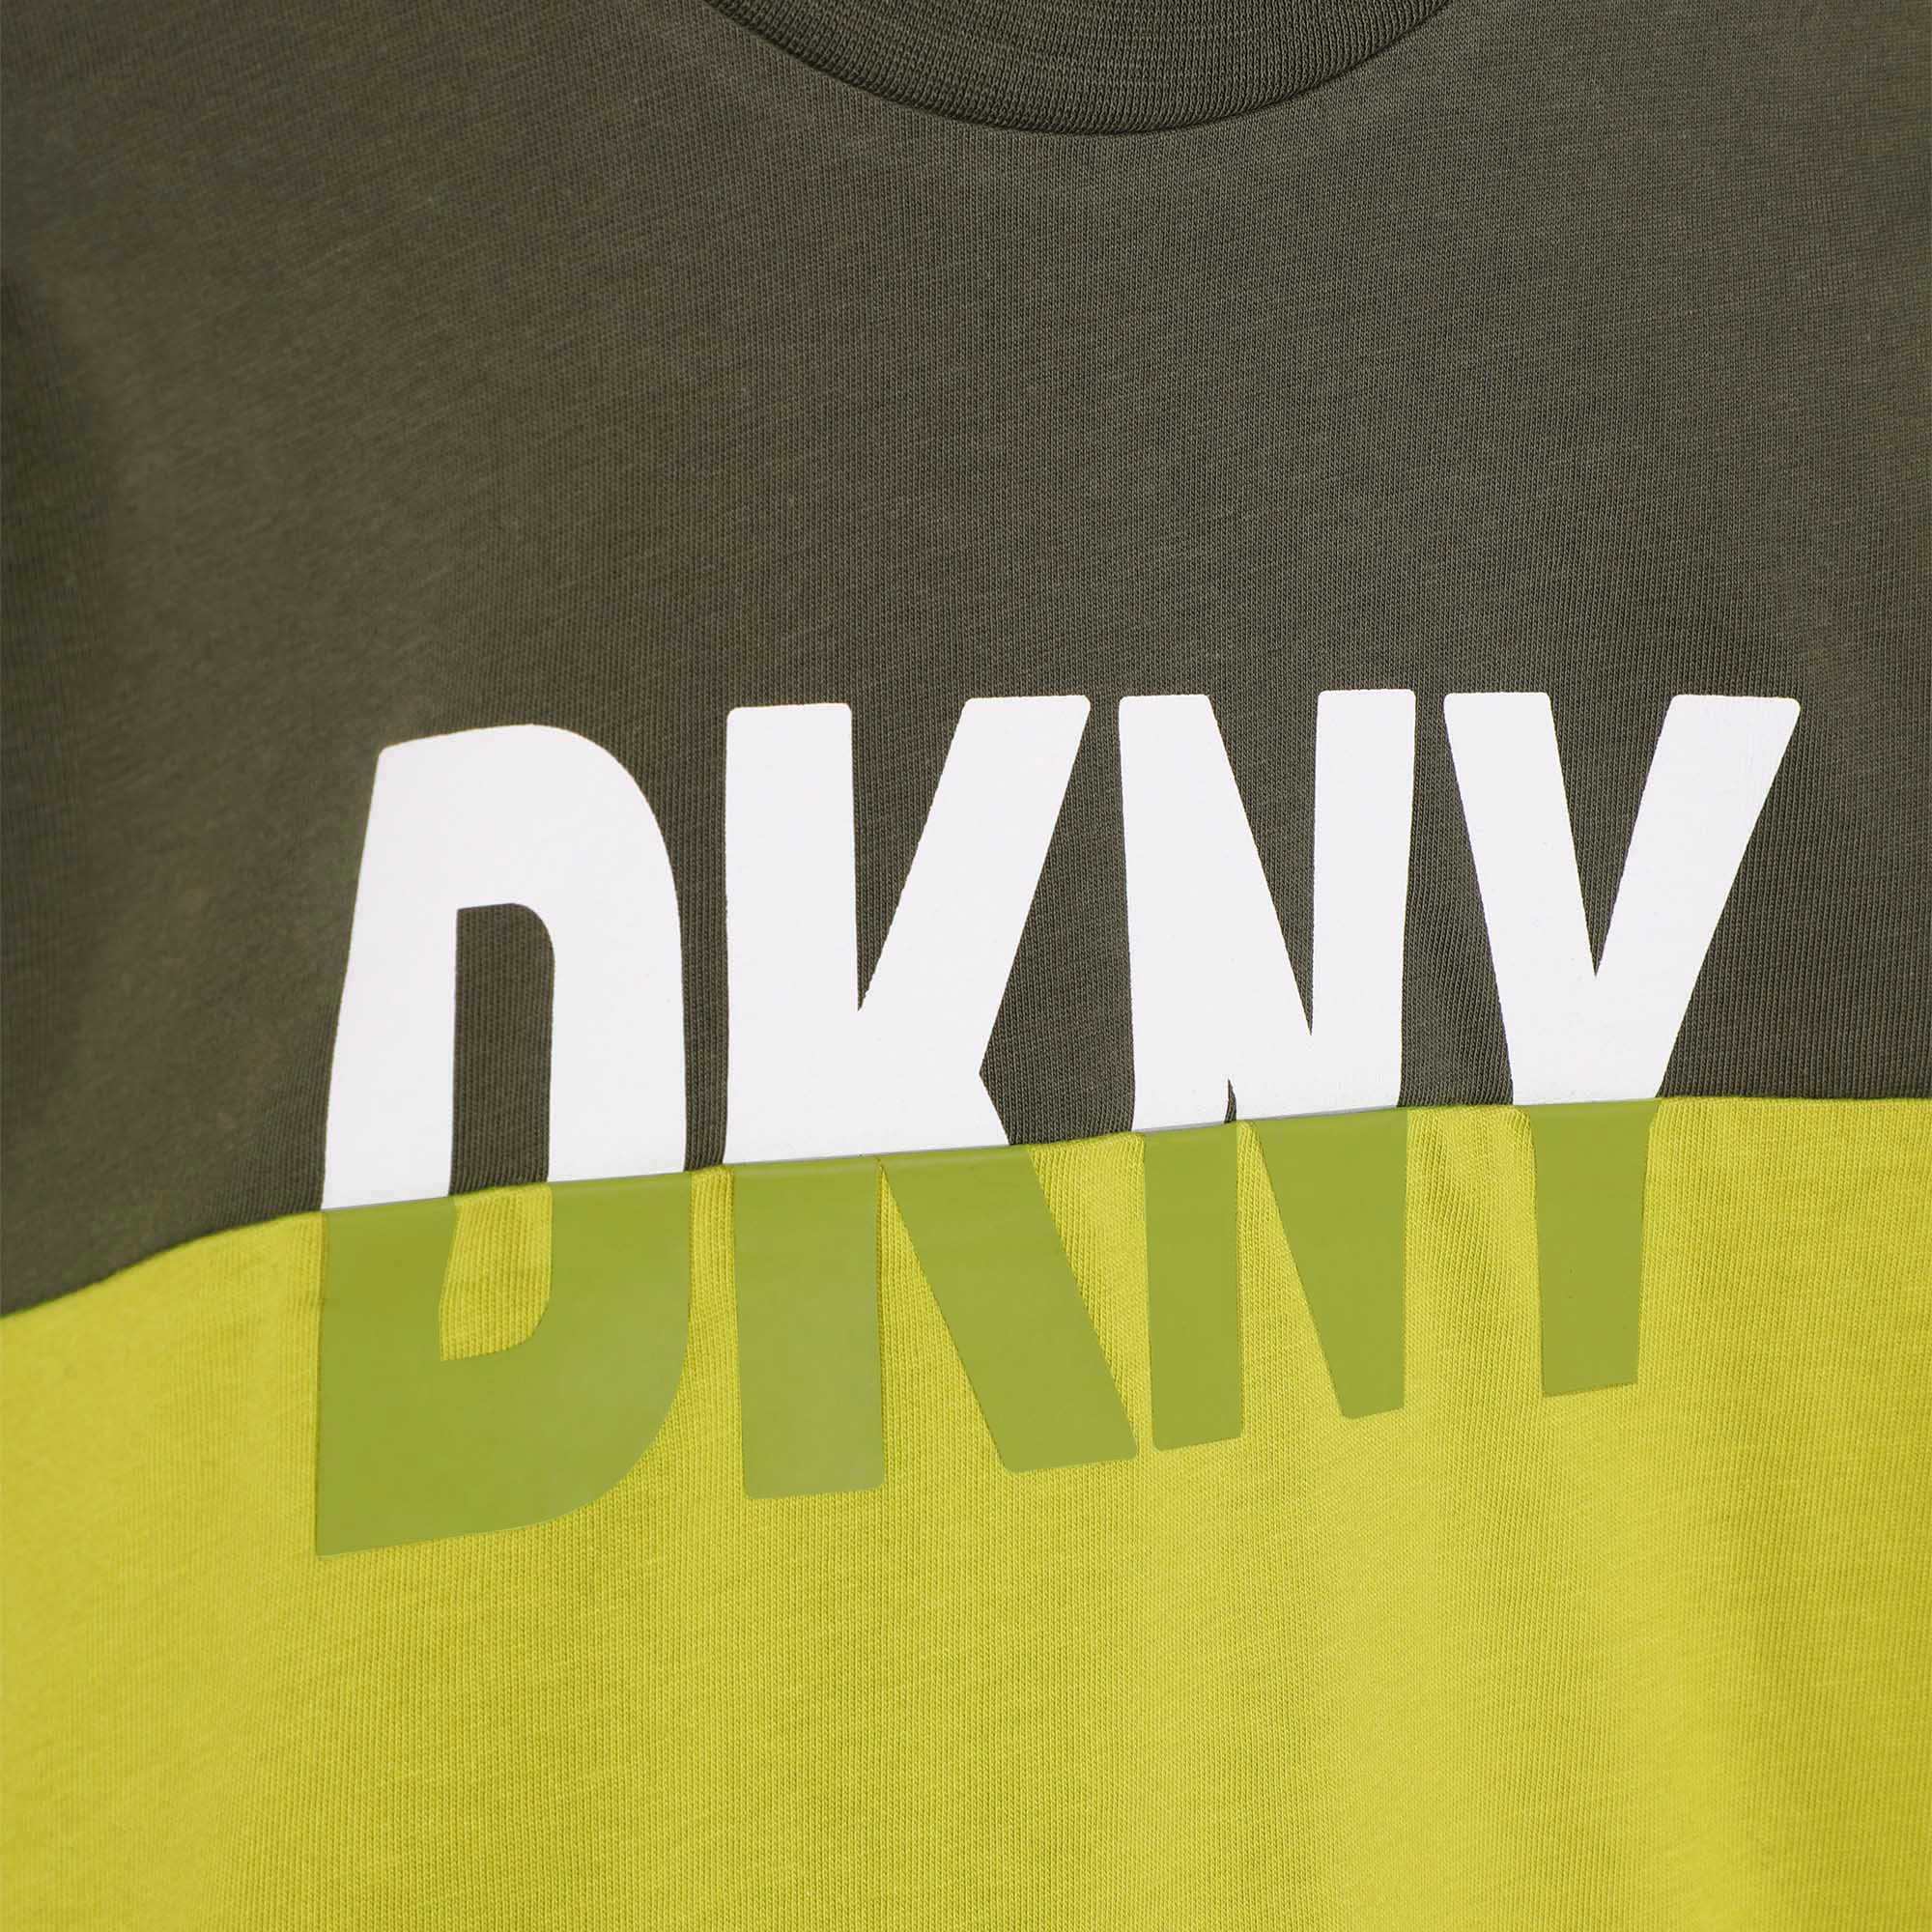 T-shirt à découpe et logo DKNY pour GARCON